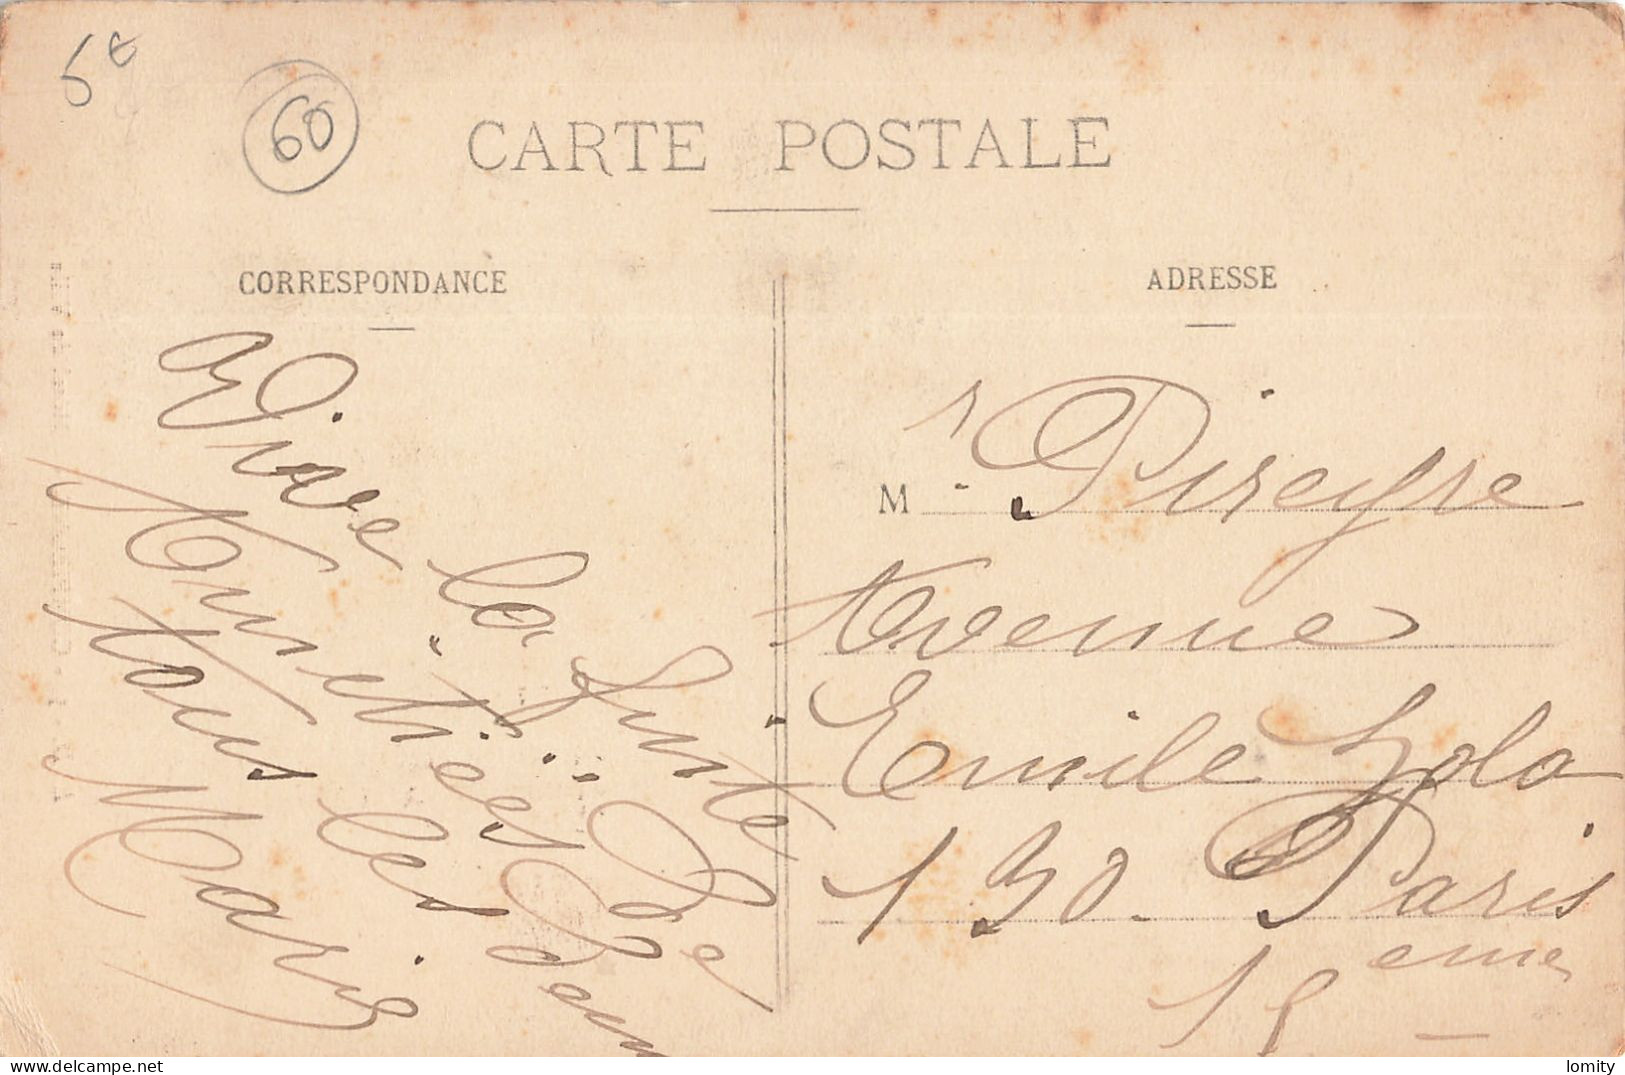 Destockage lot de 14 cartes postales CPA de l' Oise Apremont Chambly Longueil Ste Marie Senantes Compiegne Breteuil